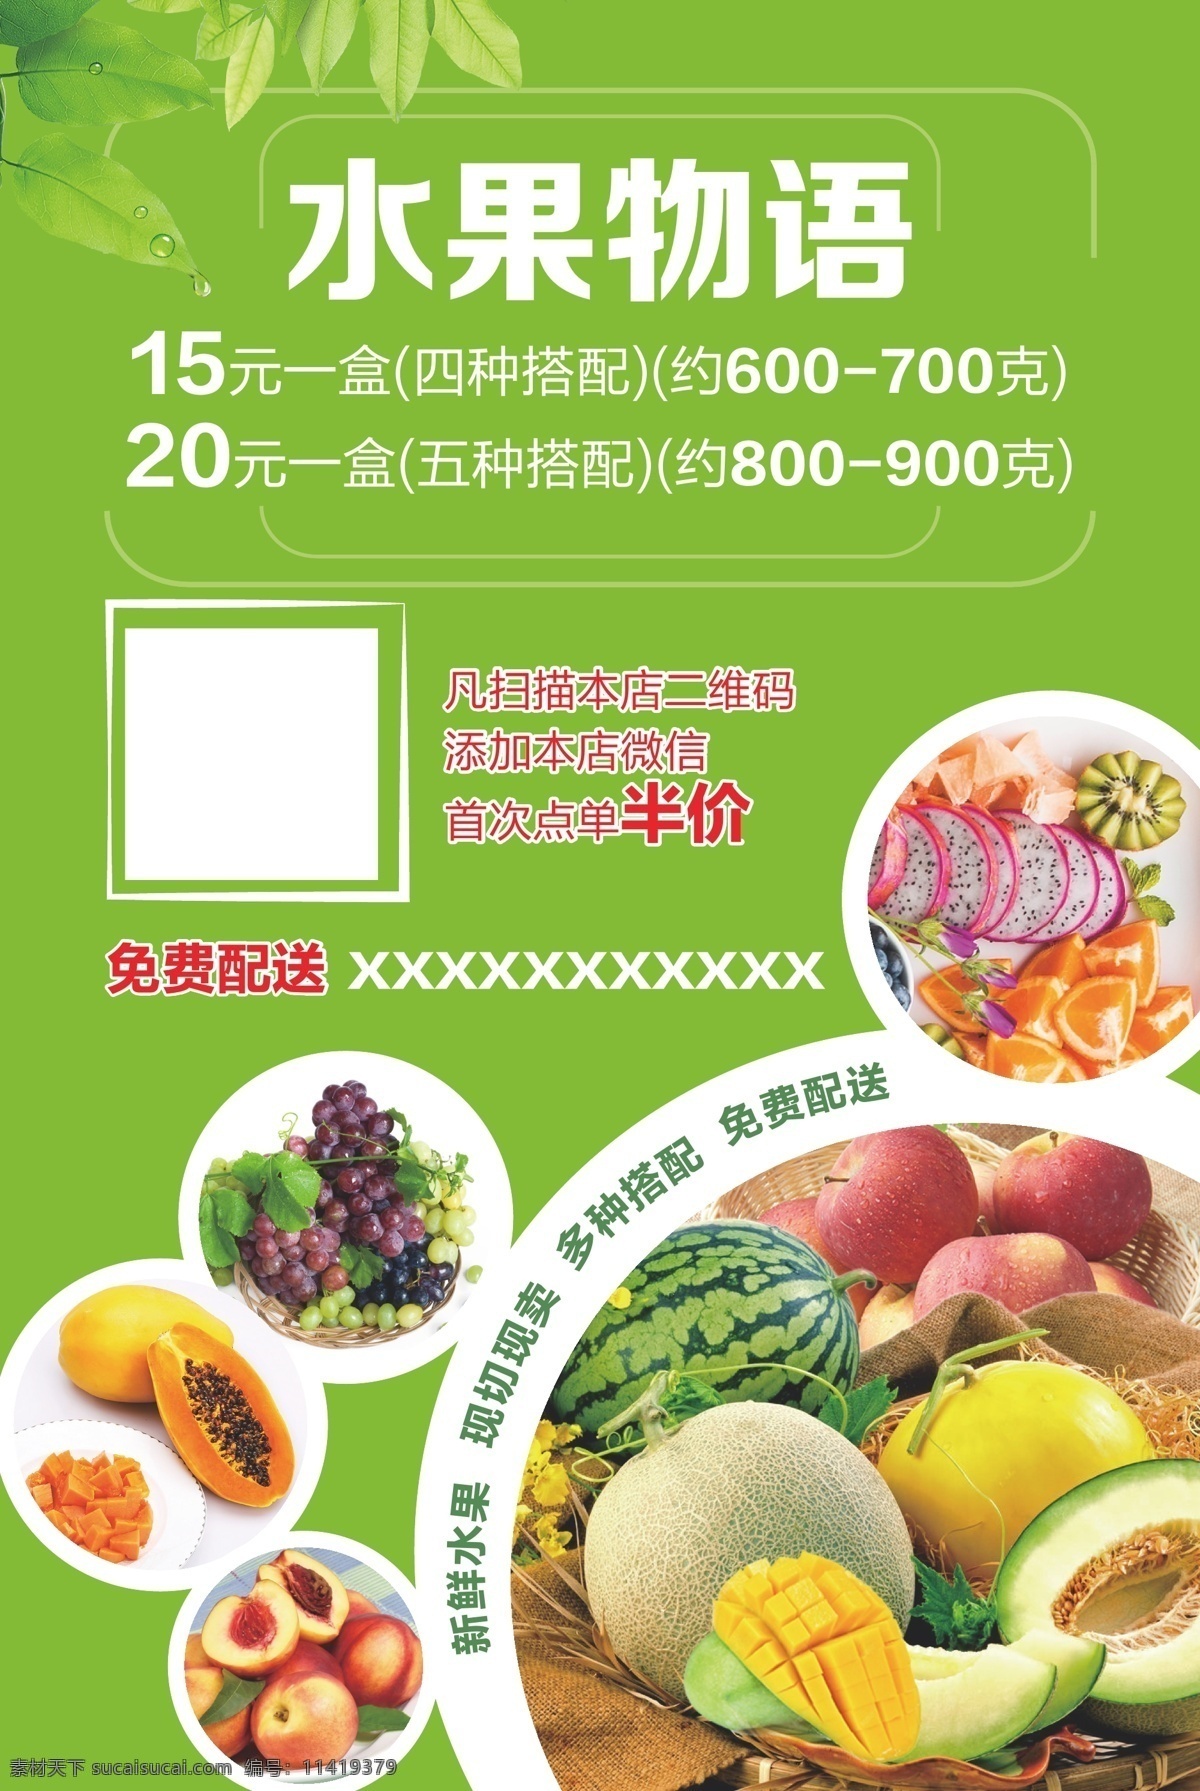 水果店 宣传 单张 水果 双面 绿色 食品